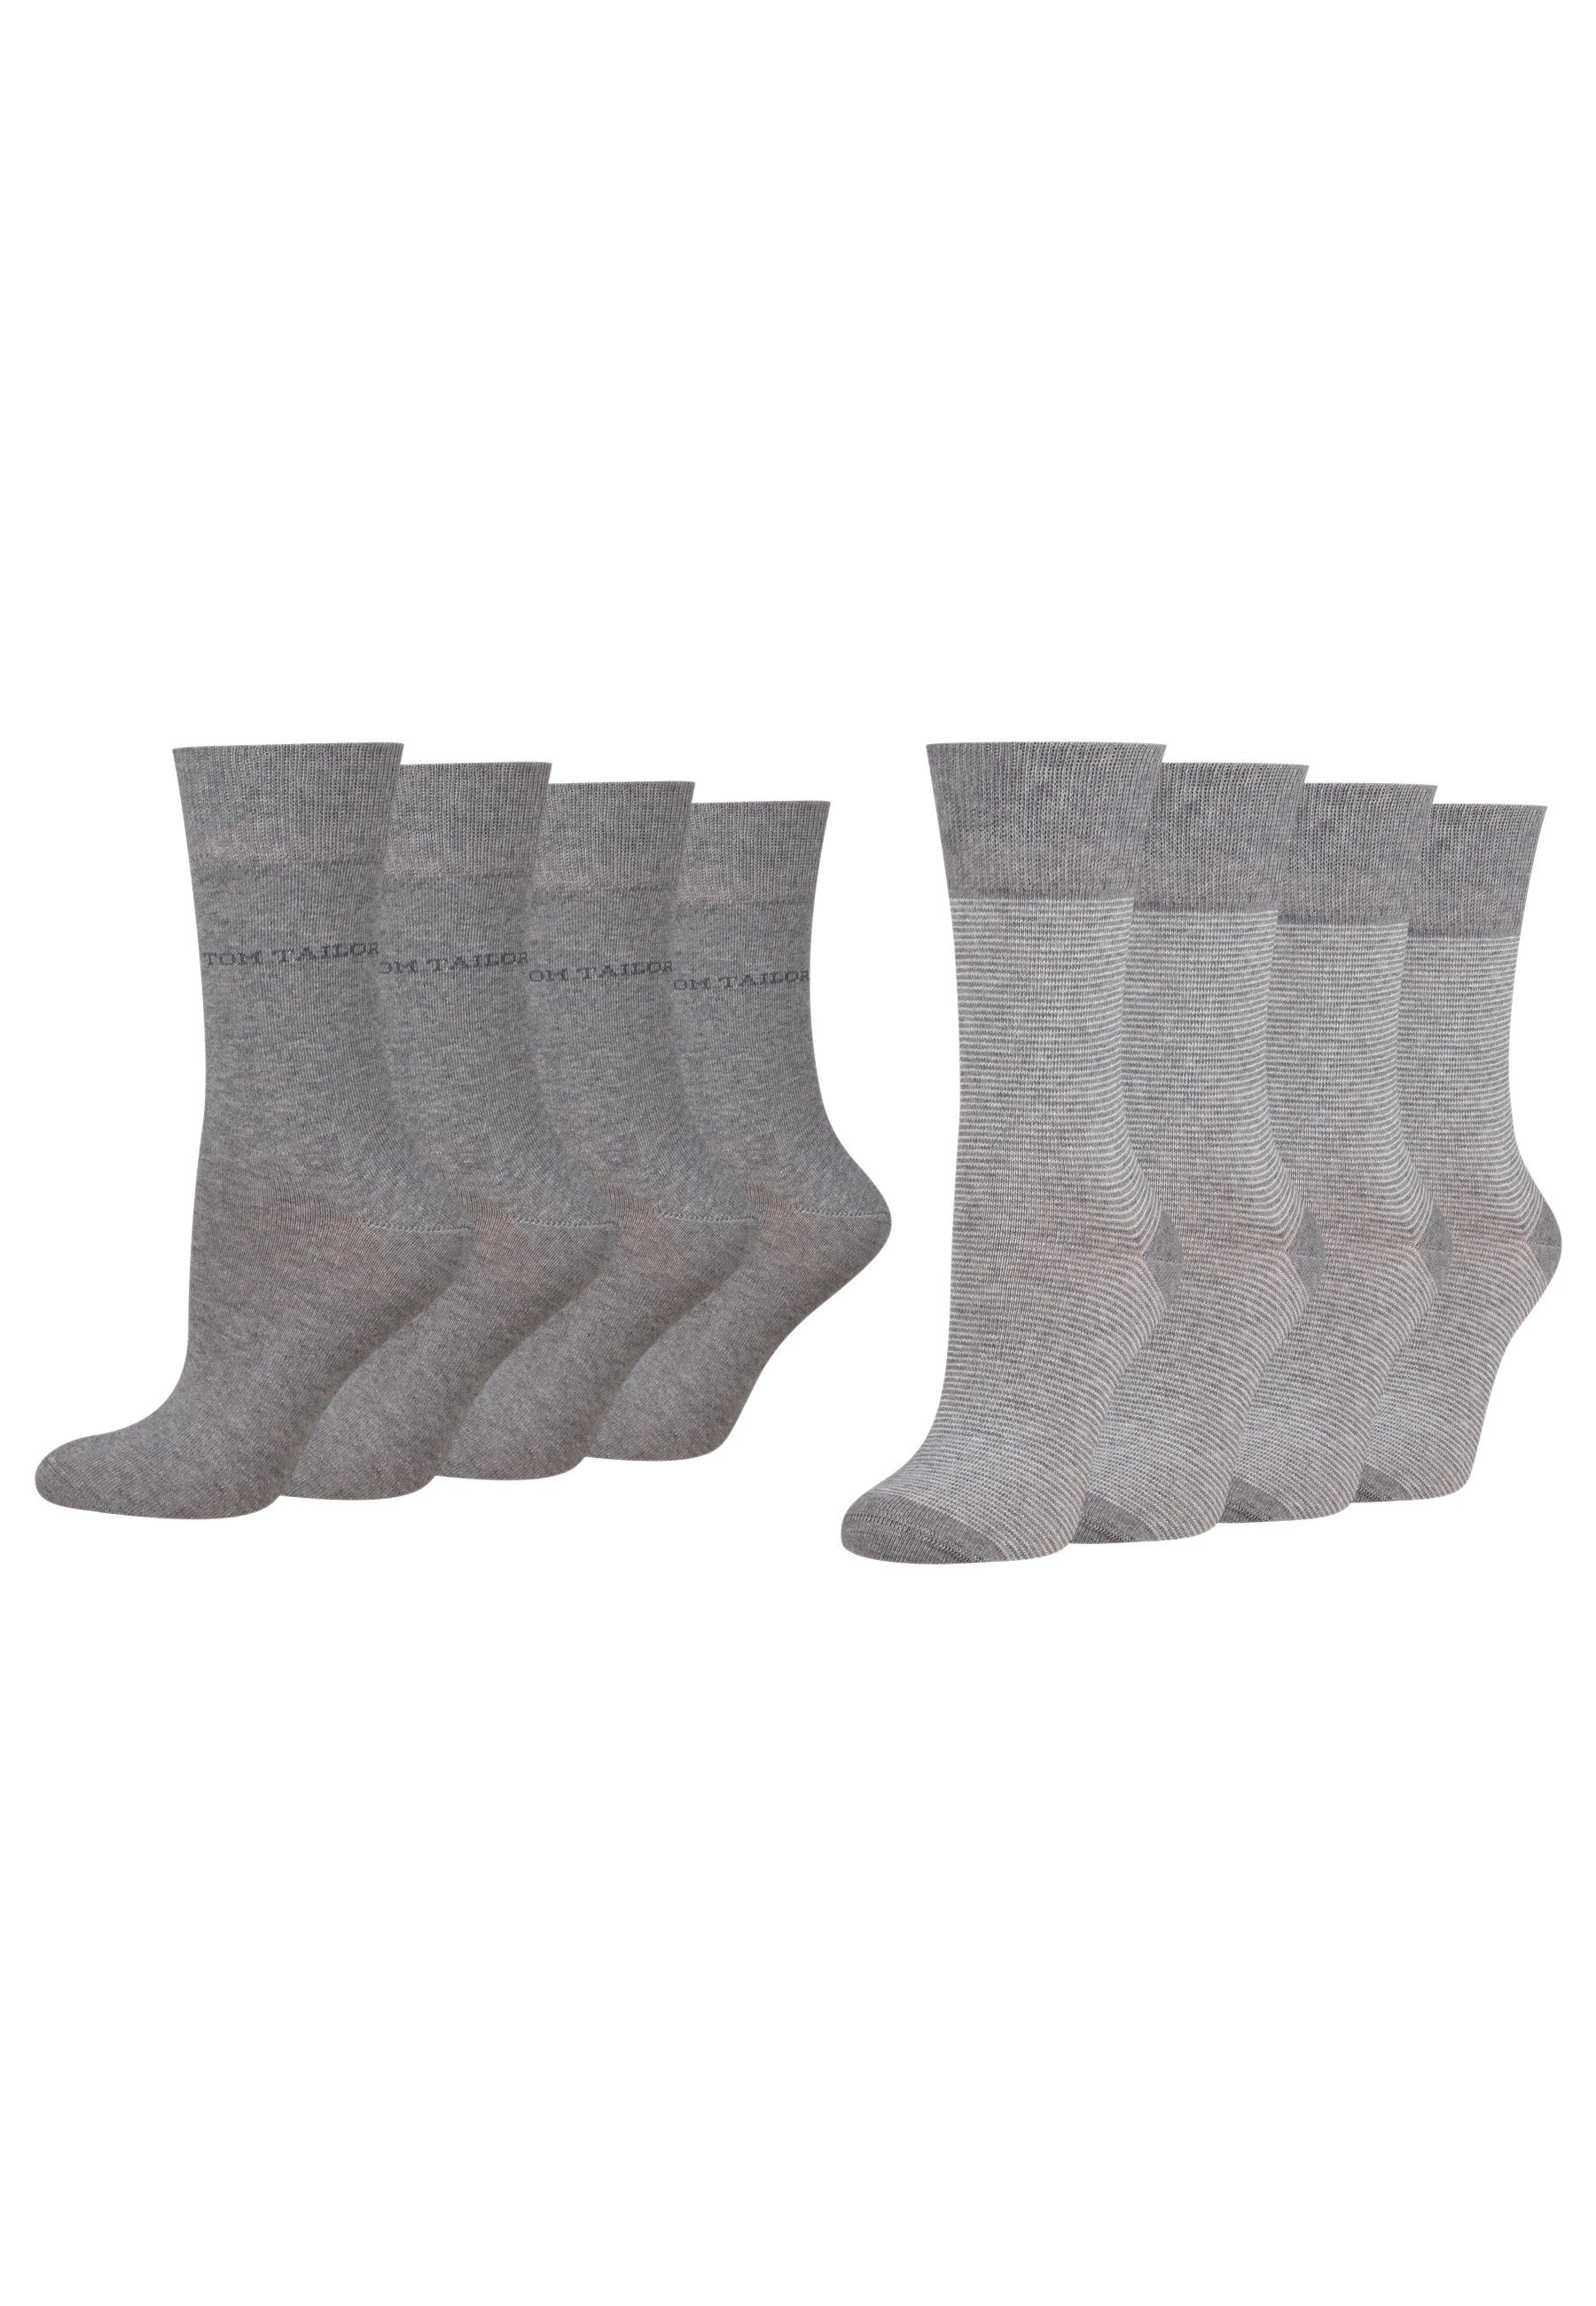 TOM TAILOR Socken 9521150042_8 Tom Tailor women socks 2er basic stripe 8 Paar grey | Socken